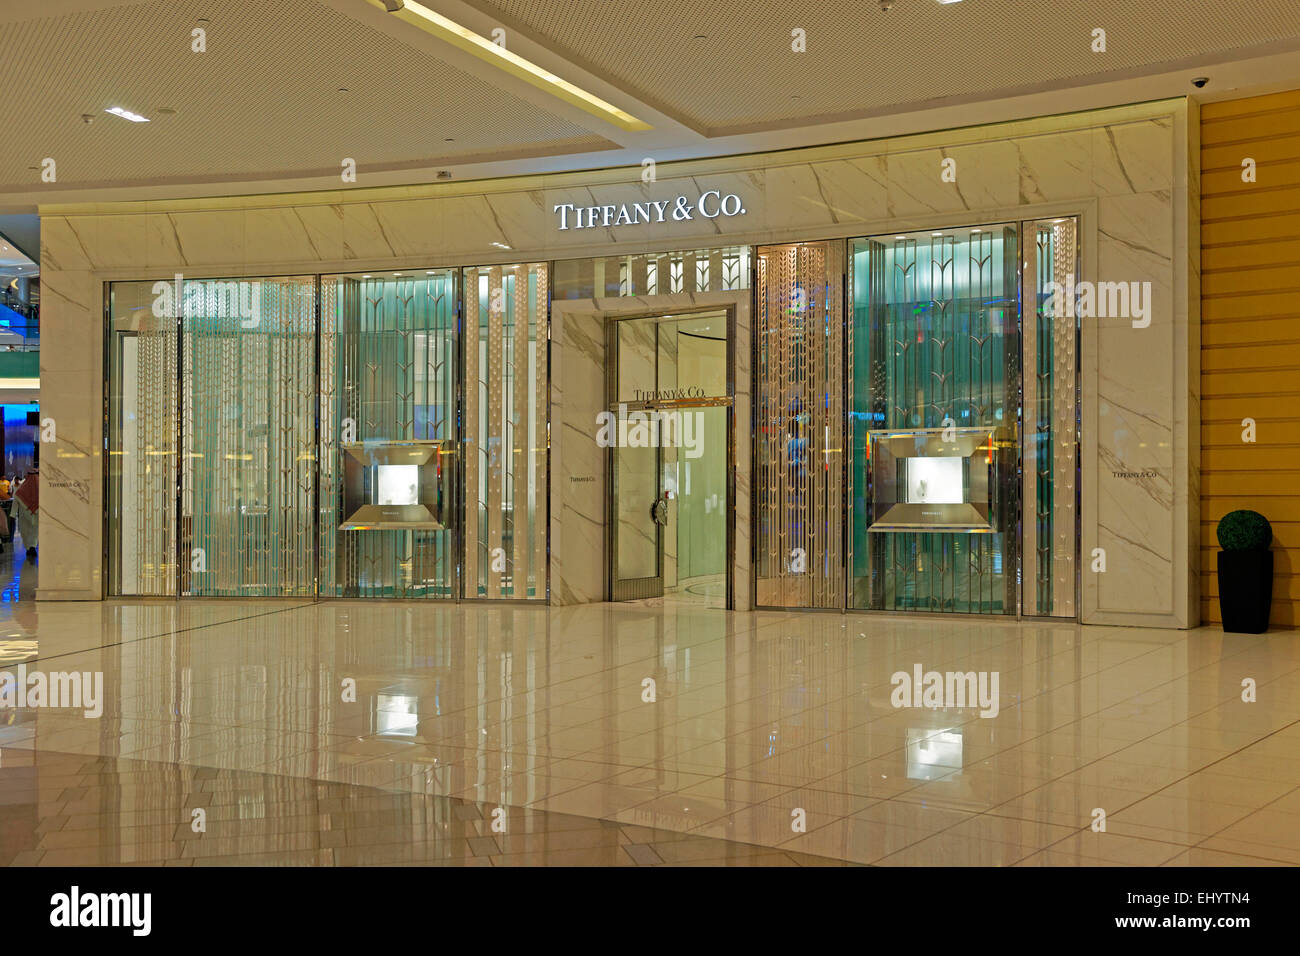 tiffany emirates mall